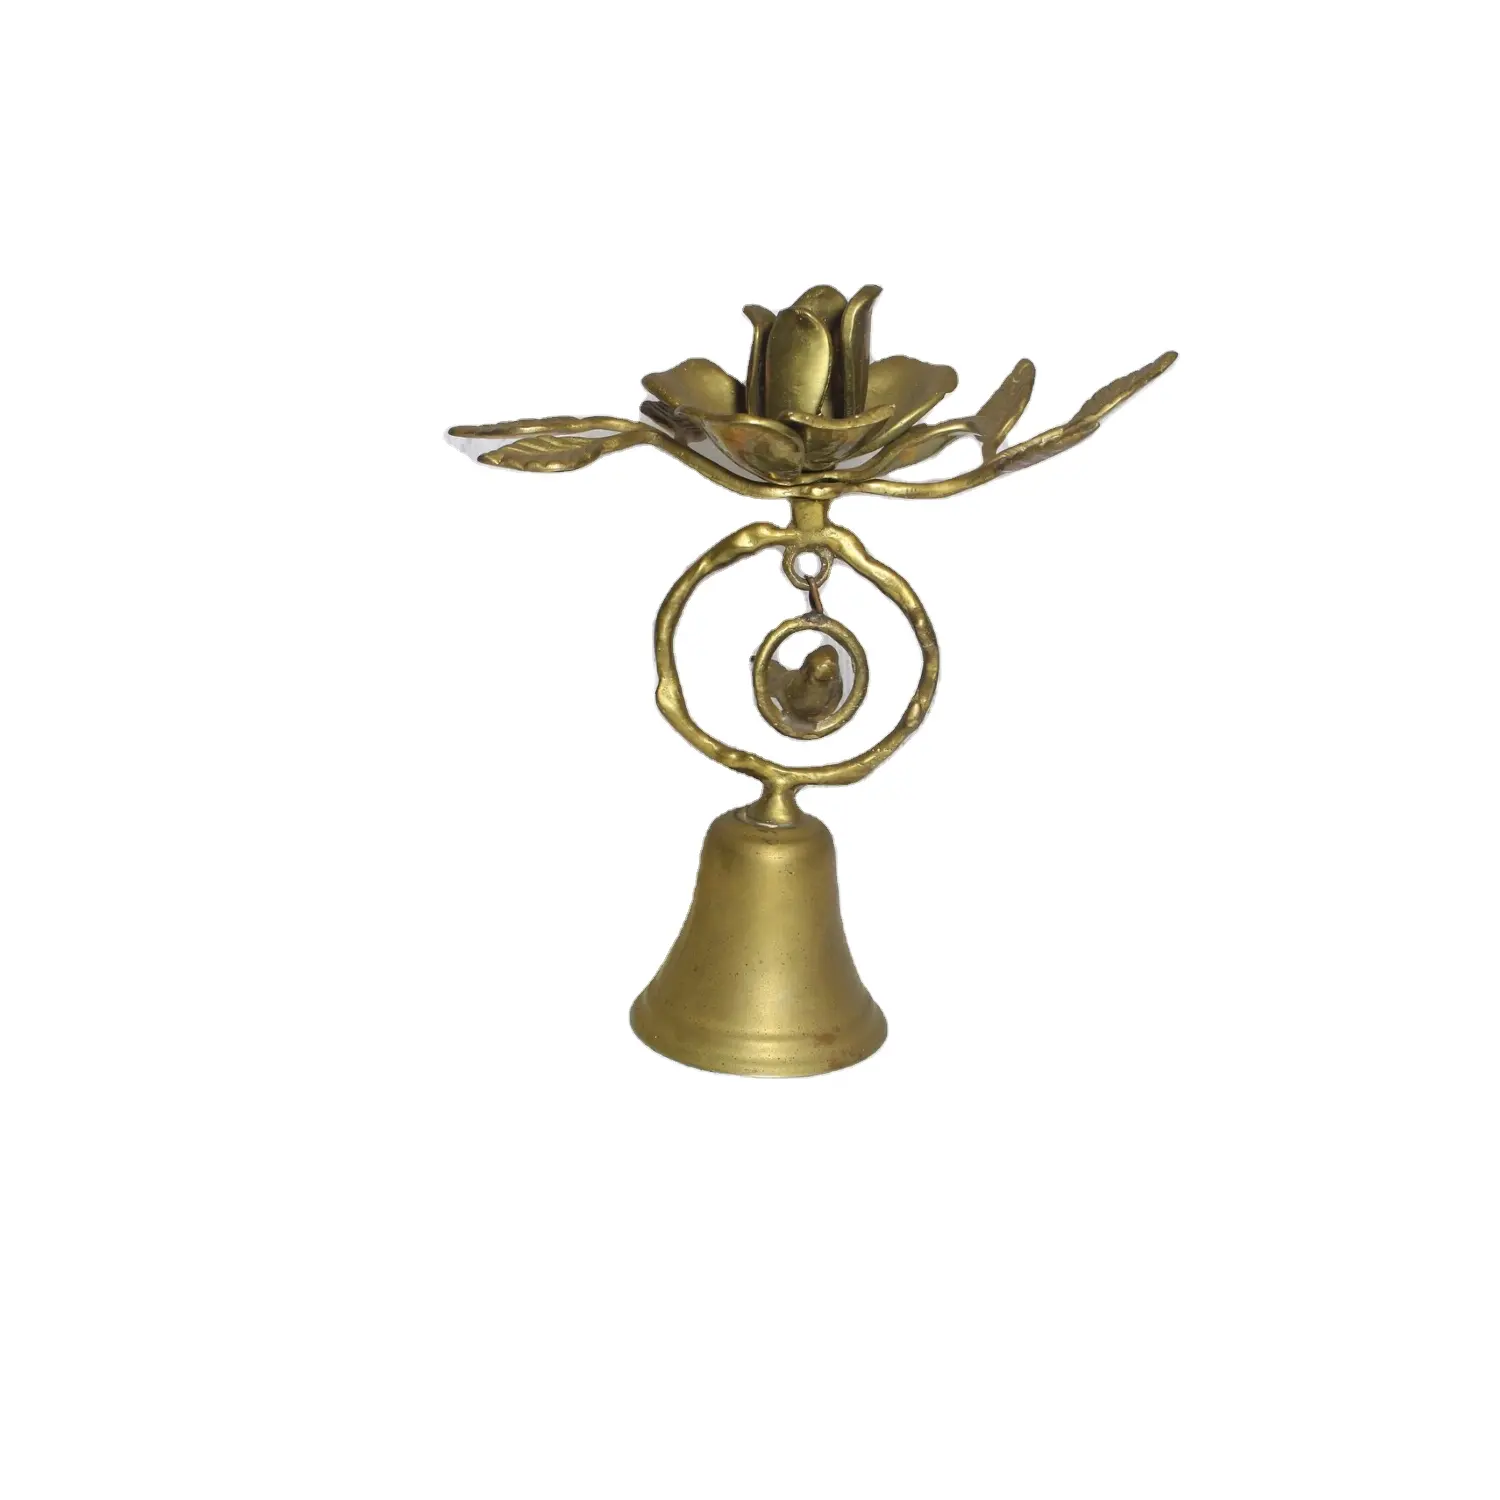 Campana de mano de campana de latón múltiple con mango de nuevo diseño Campana de metal de nueva apariencia Elegante para suministros de oficina a un precio razonable